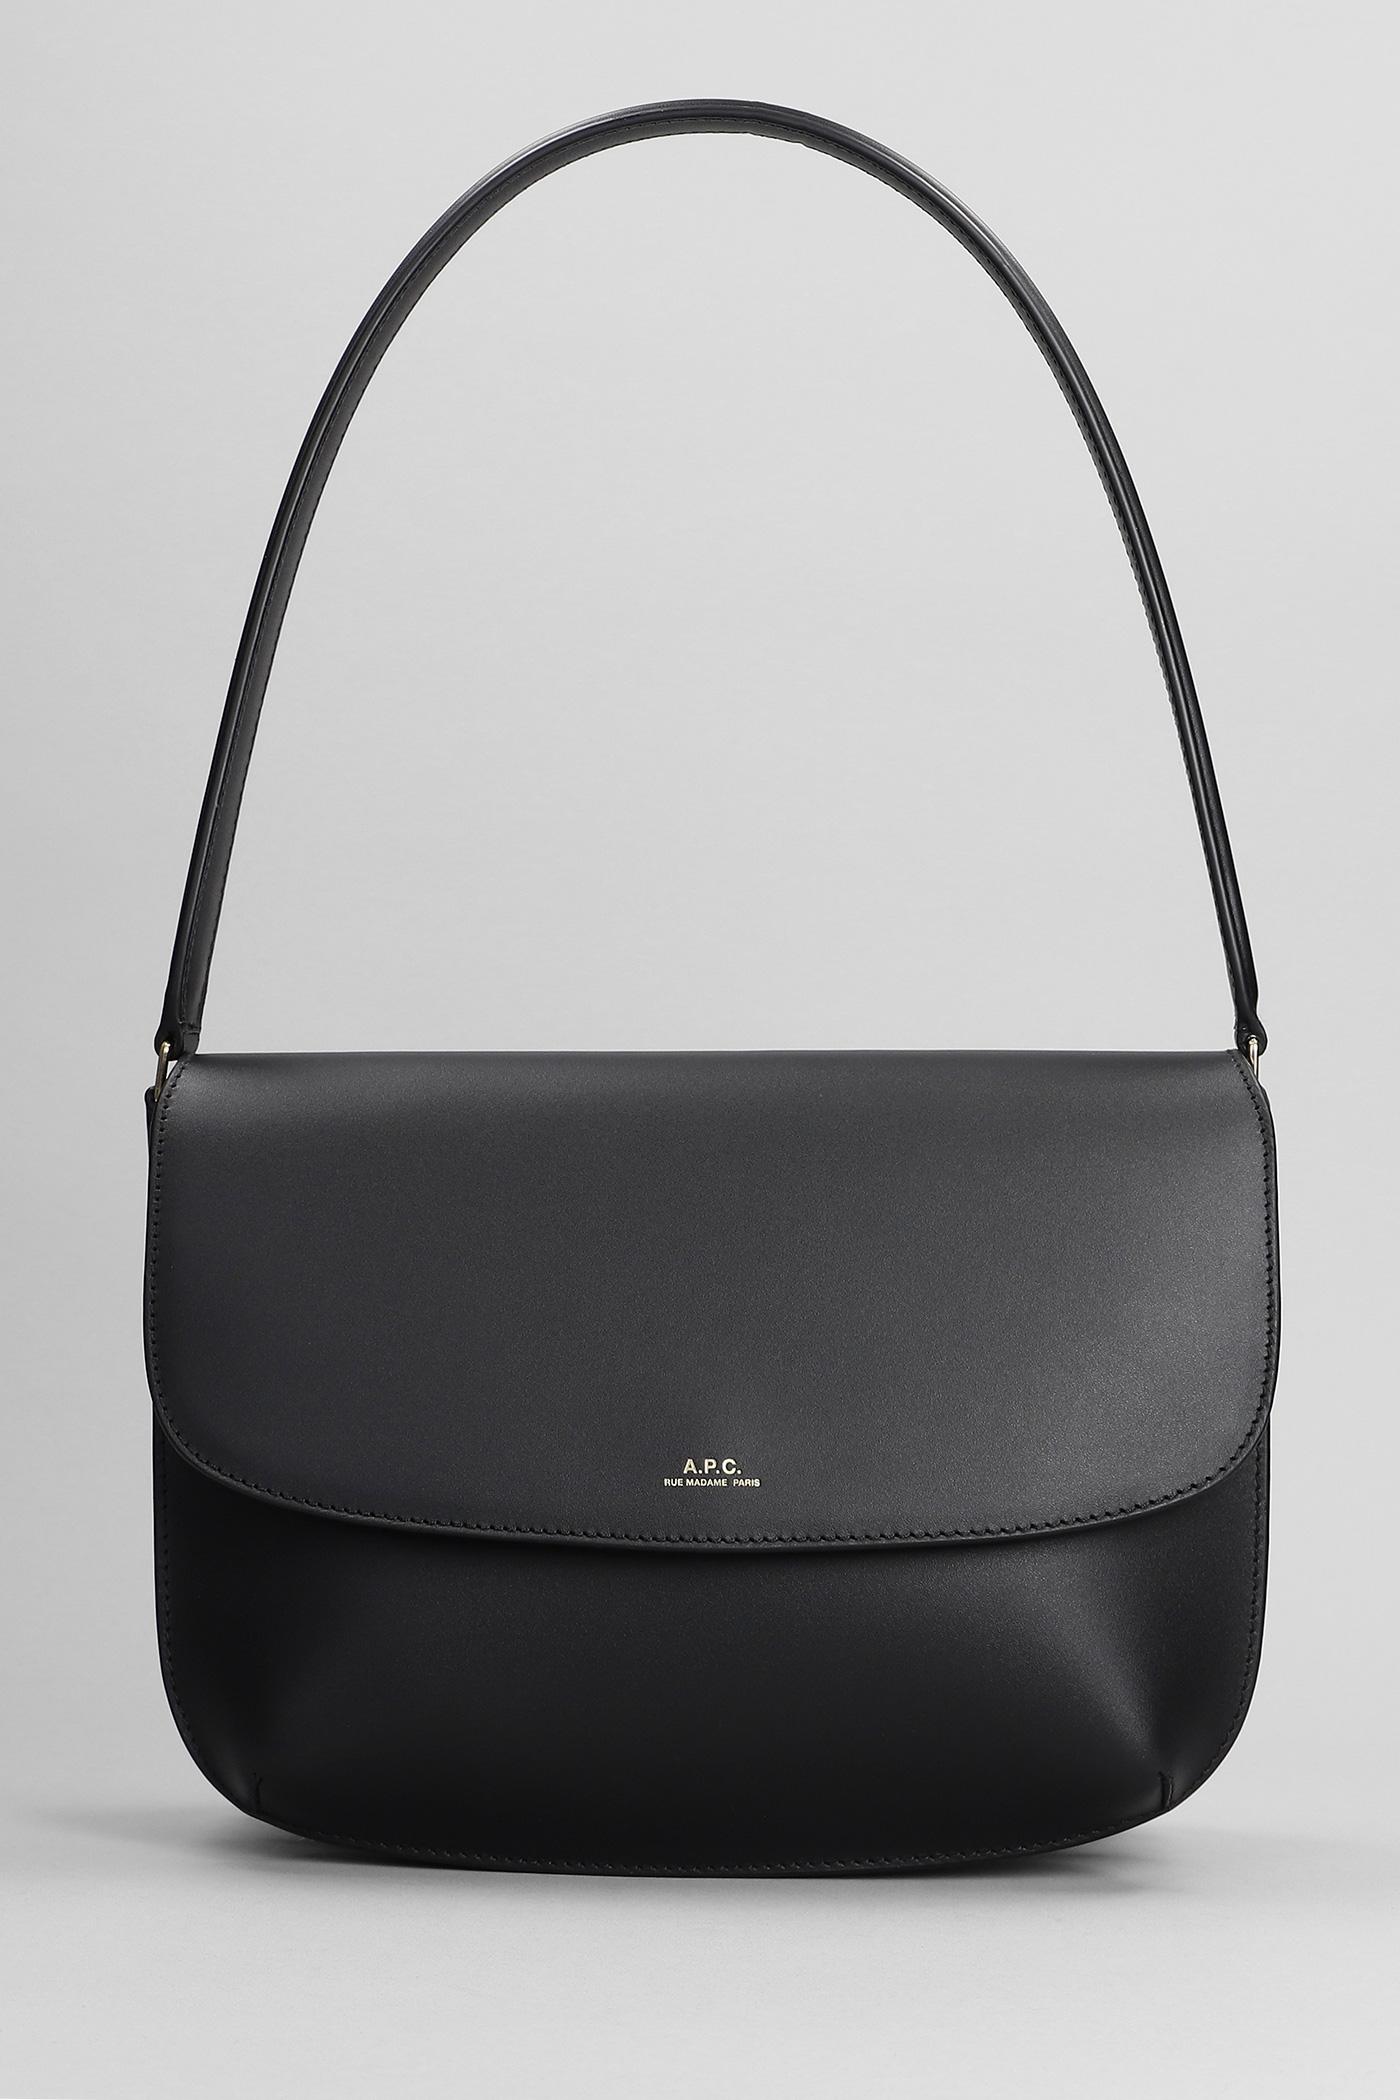 A.P.C. Sarah Shoulder Bag In Black Leather | Lyst